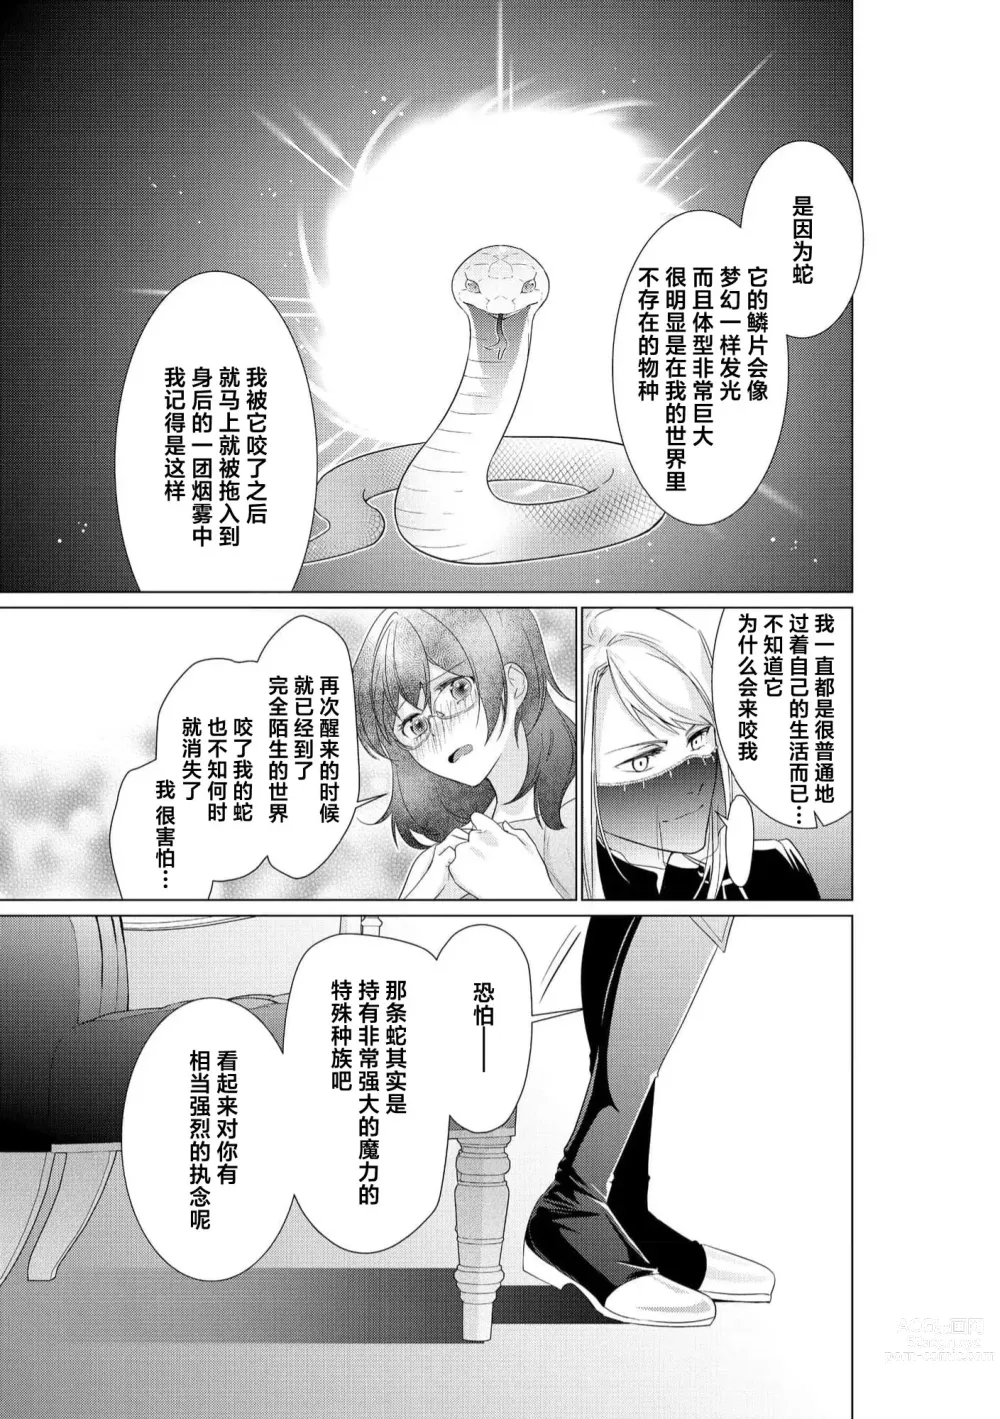 Page 19 of manga 白蛇大人的溺爱试验~苦命OL在异世界缔结了淫荡契约…~